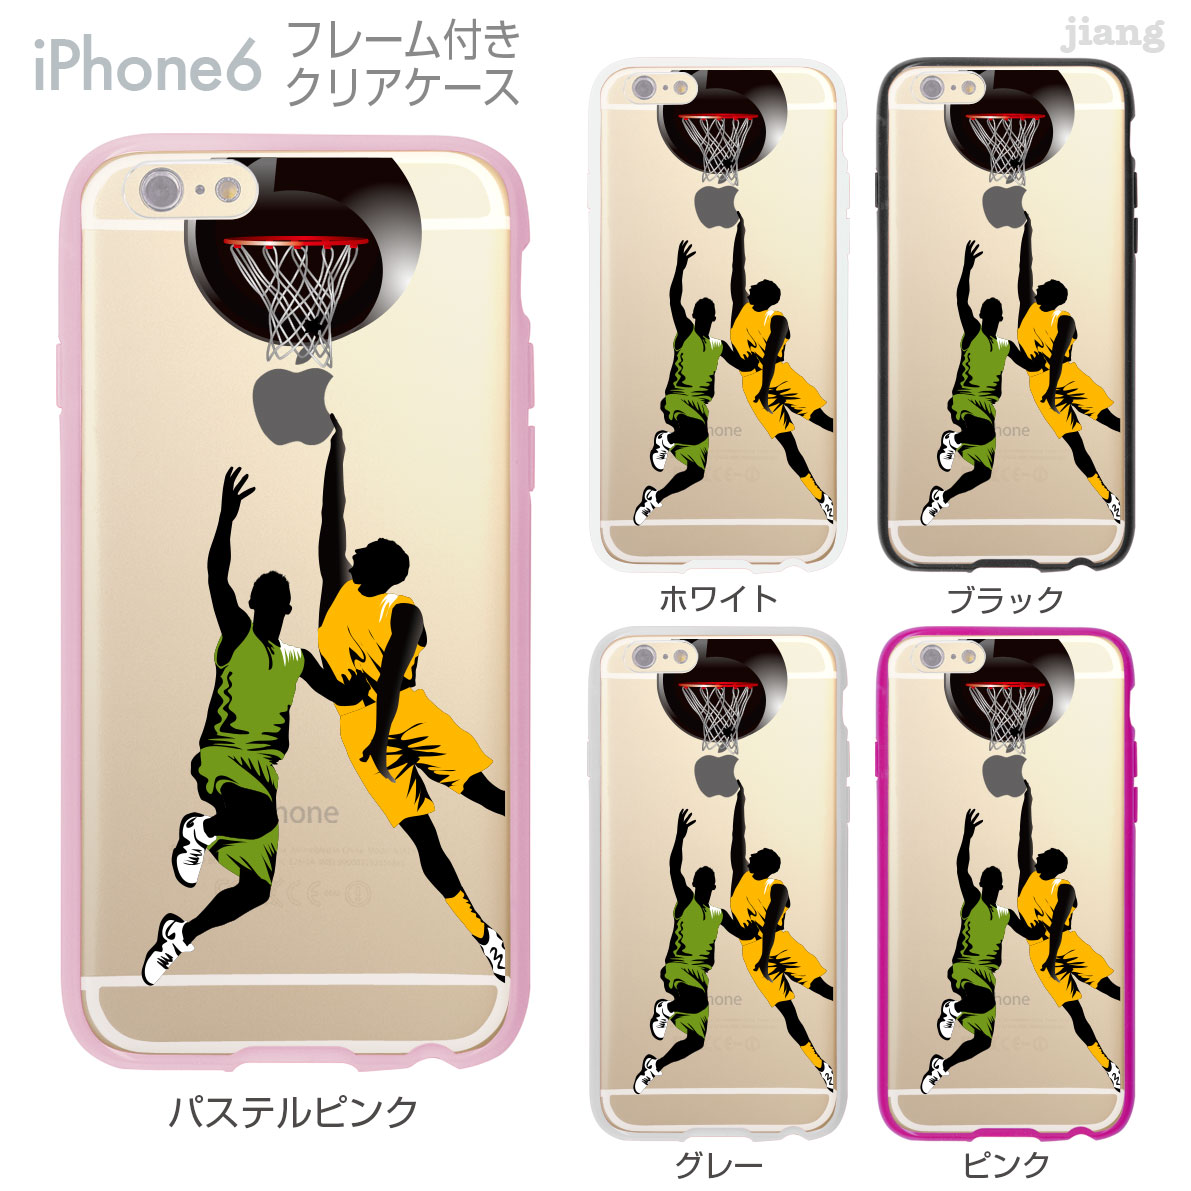 iPhone6s iPhone6 ケース バンパー カバー スマホケース クリアケース ハードケース ジアン jiang 着せ替え イラスト かわいい Clear Arts バスケットボール 01-ip6-f0063